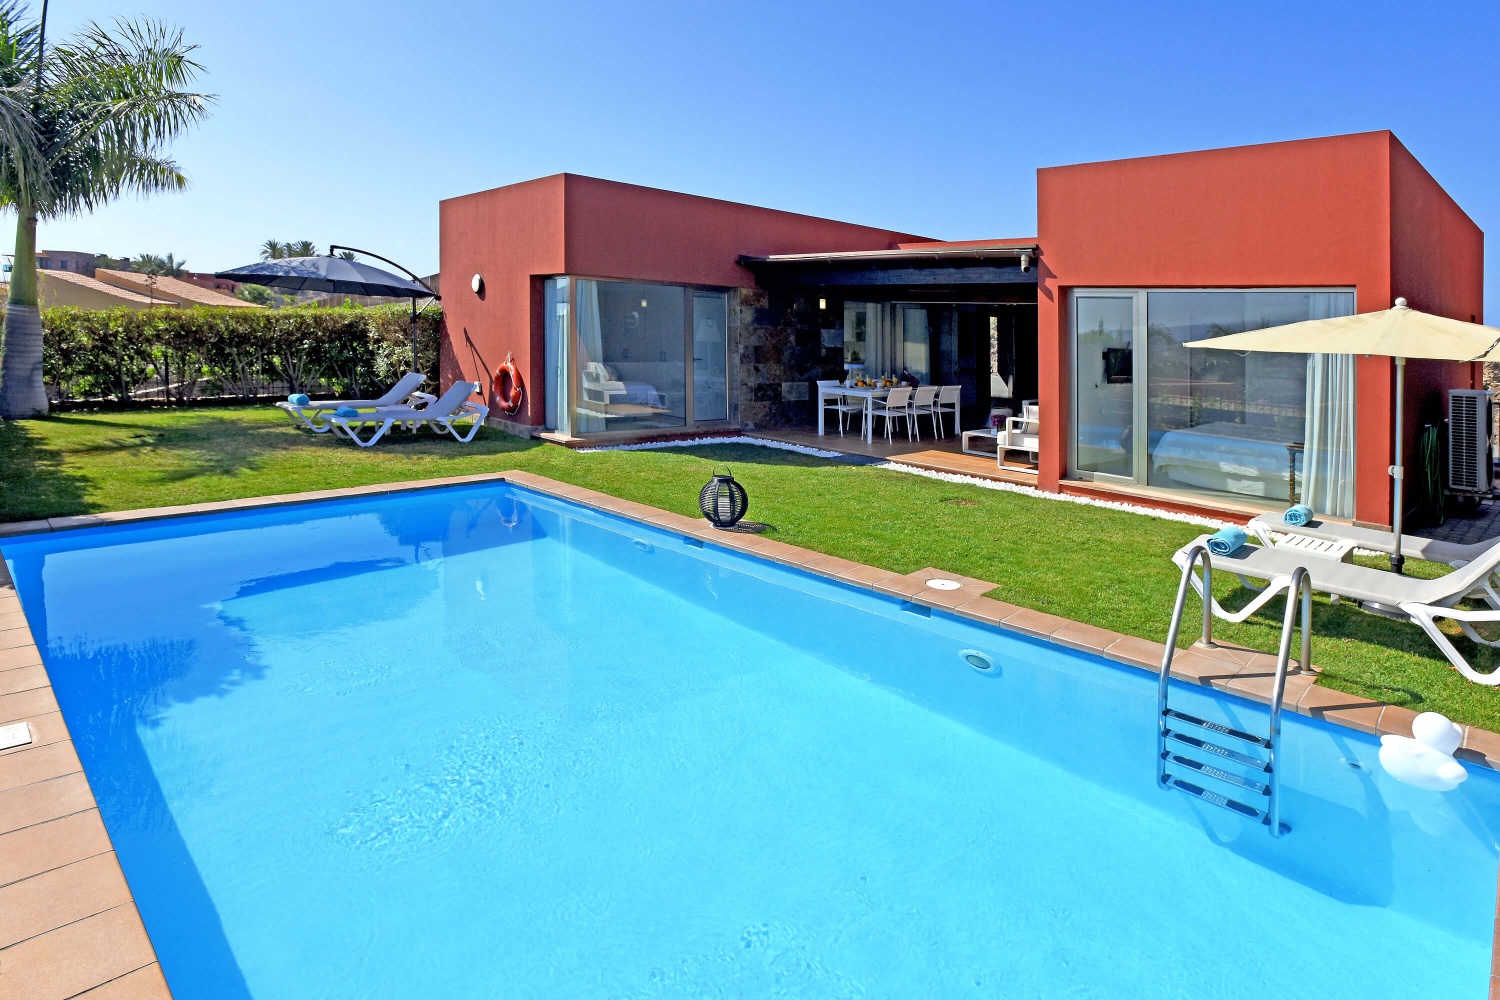 Helt ny og moderne møblert bungalow med nydelig utendørs terrasse, stort basseng og flott utsikt over golfbanen og landsbygda